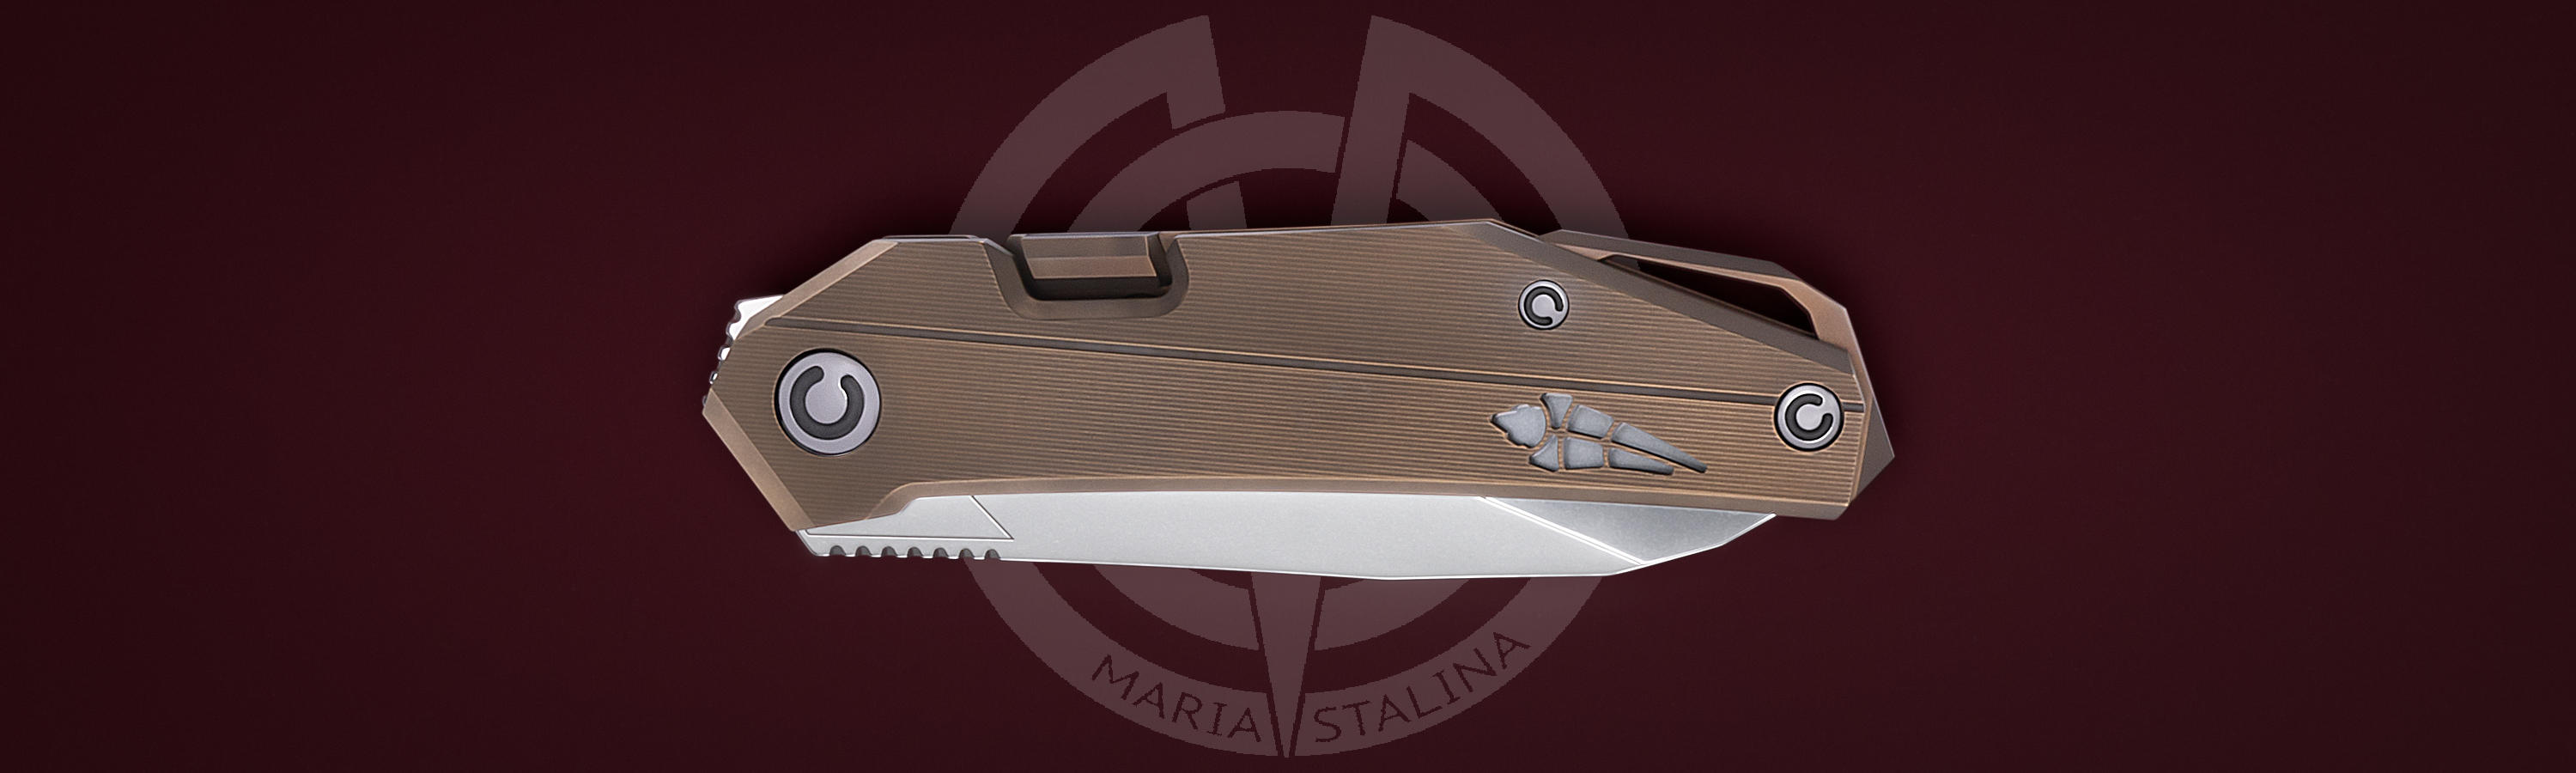 Manufacture caliber folding knife Kalpa Run 2 BW/BR 4/5